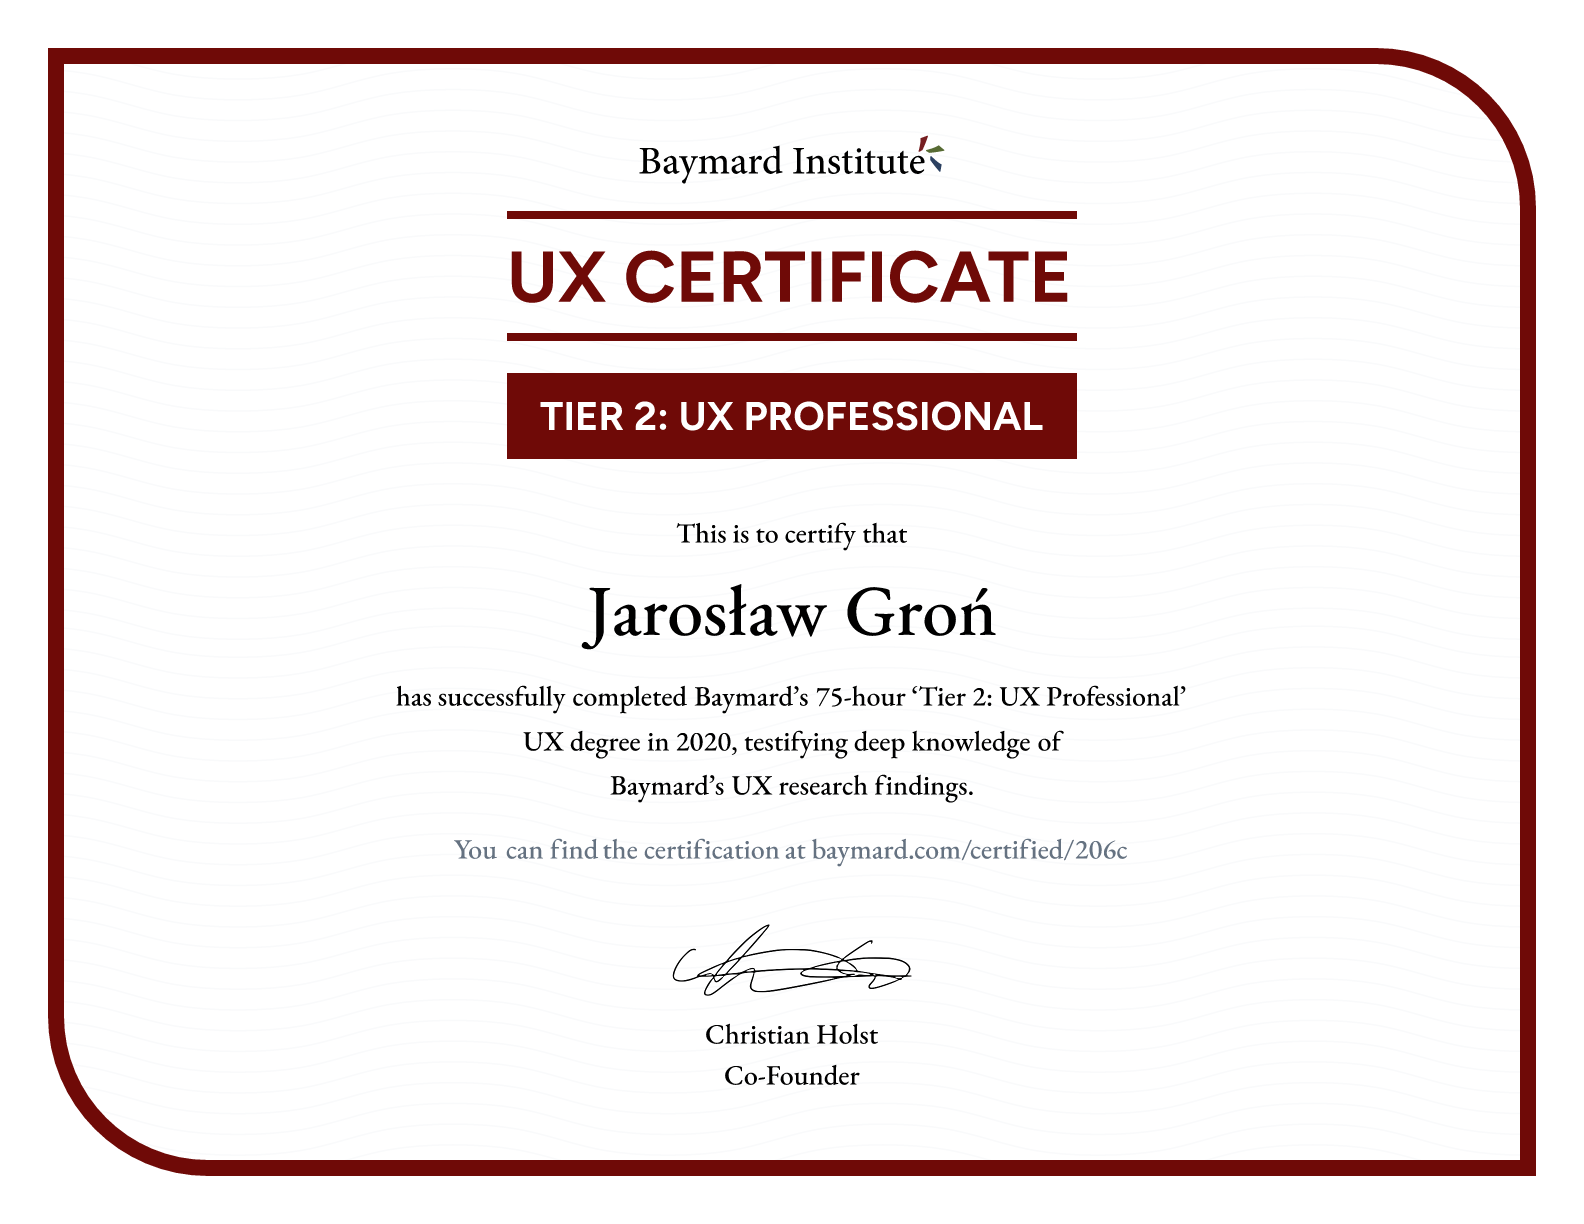 Jarosław Groń’s certificate